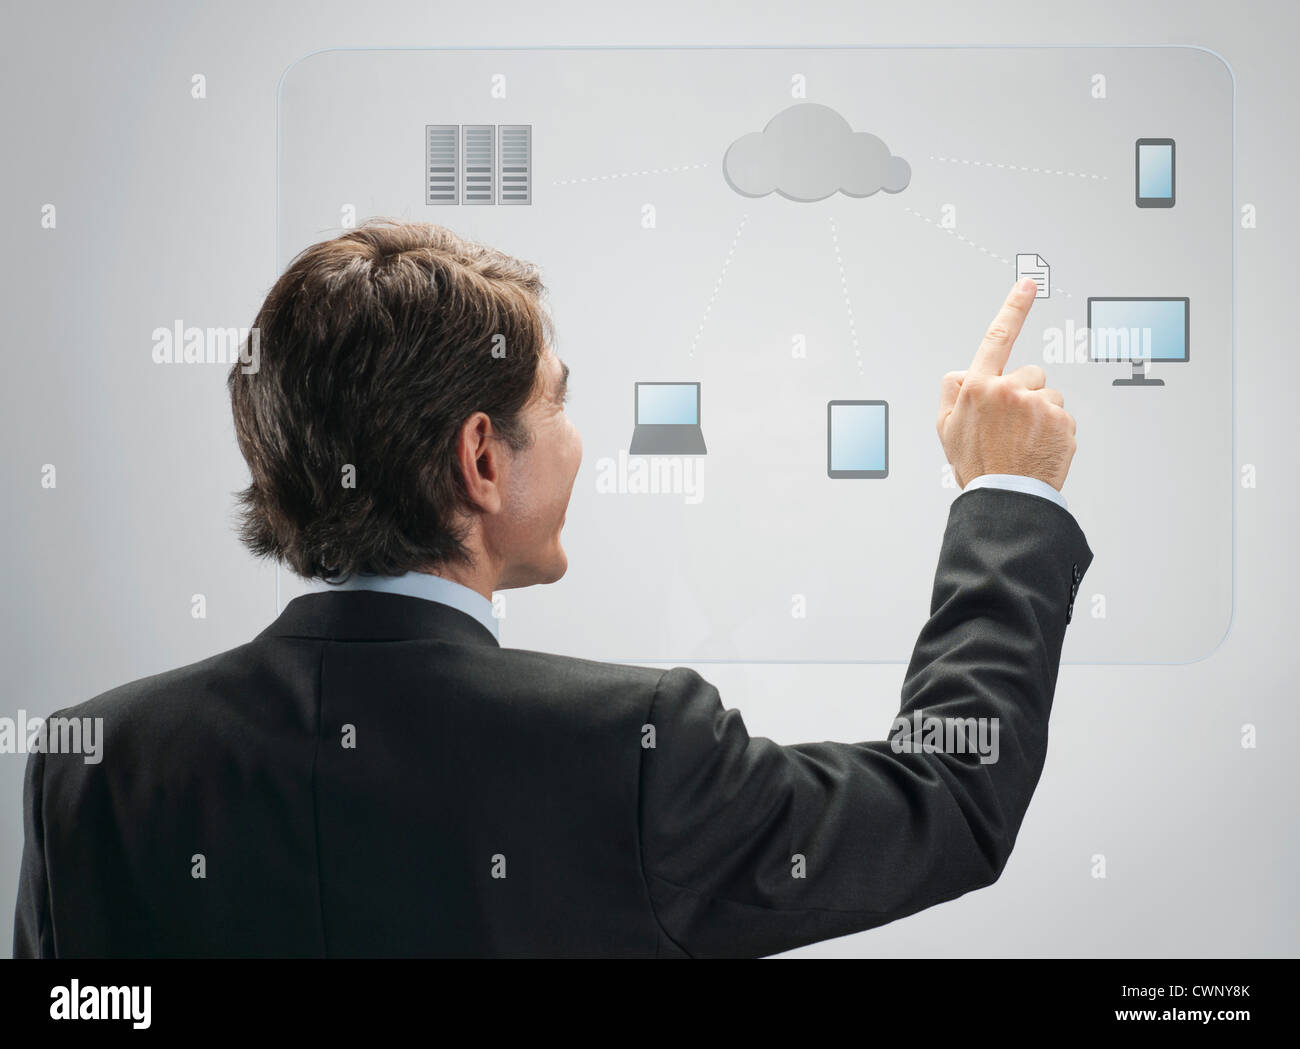 Businessman using la technologie cloud computing sur l'interface de l'écran tactile avancé Banque D'Images